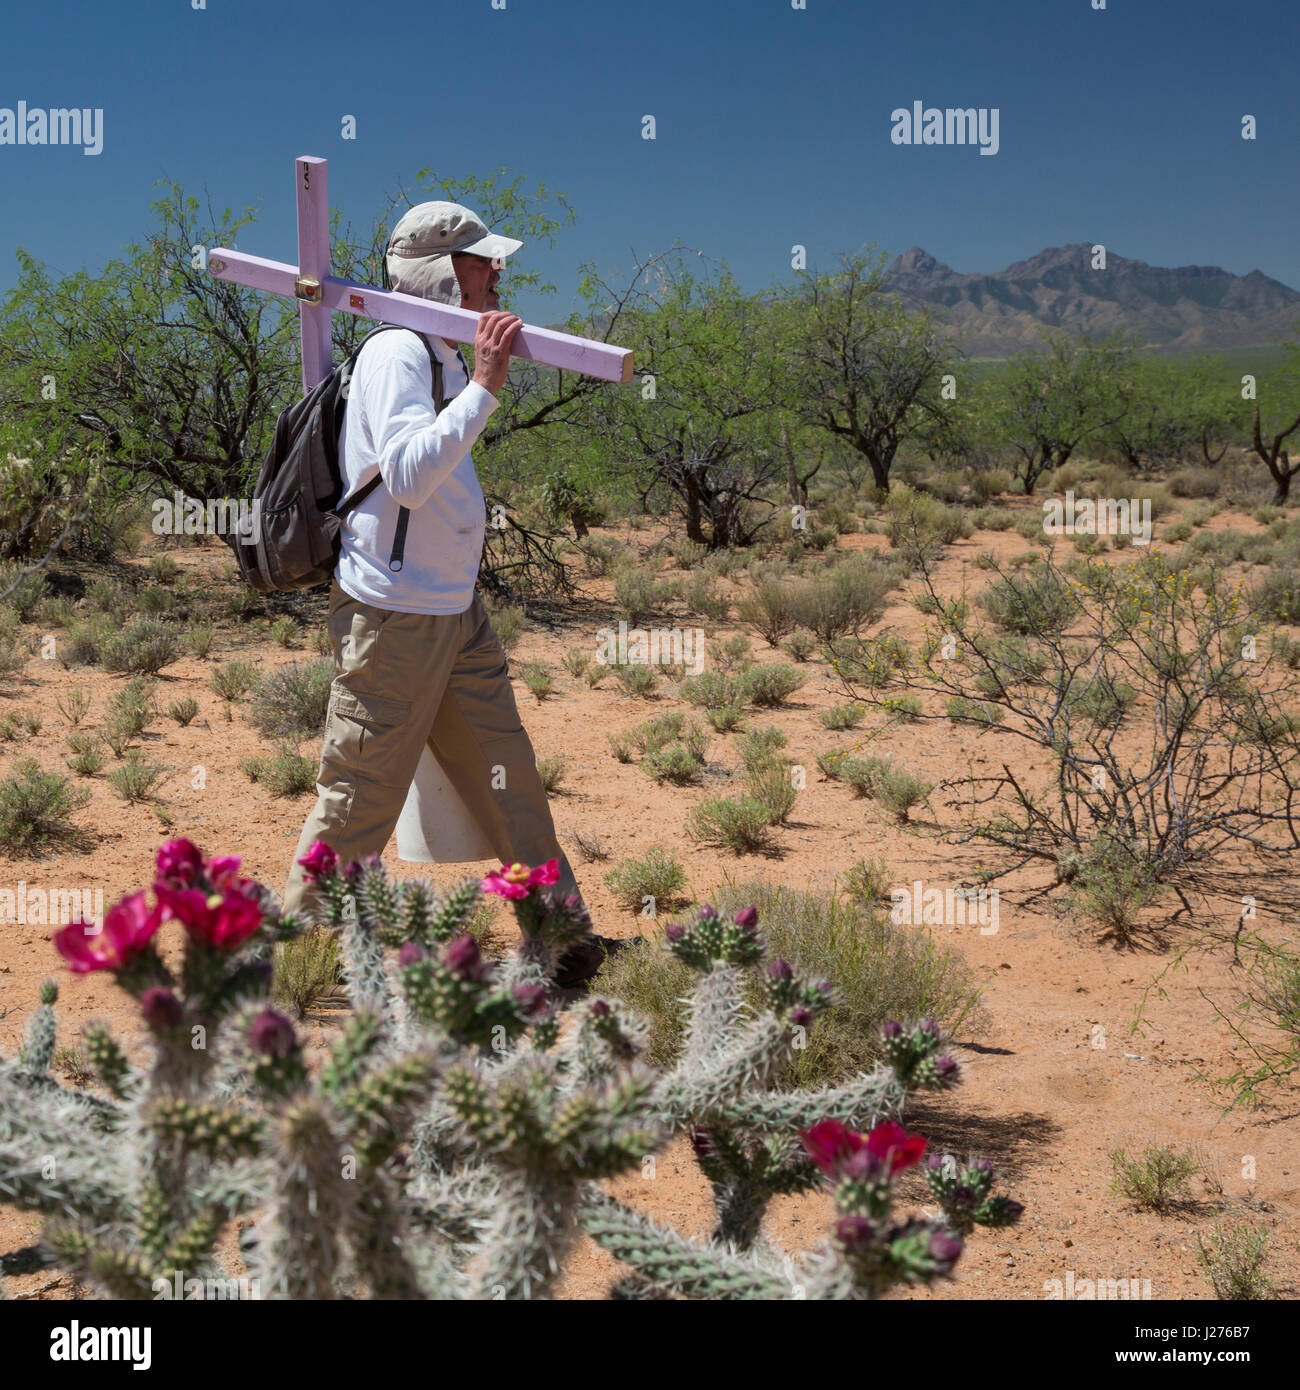 Tucson, Arizona - membres de la Tucson Samaritains place croix dans le désert des lieux où le reste des migrants n'a été trouvé. Des centaines de mig Banque D'Images